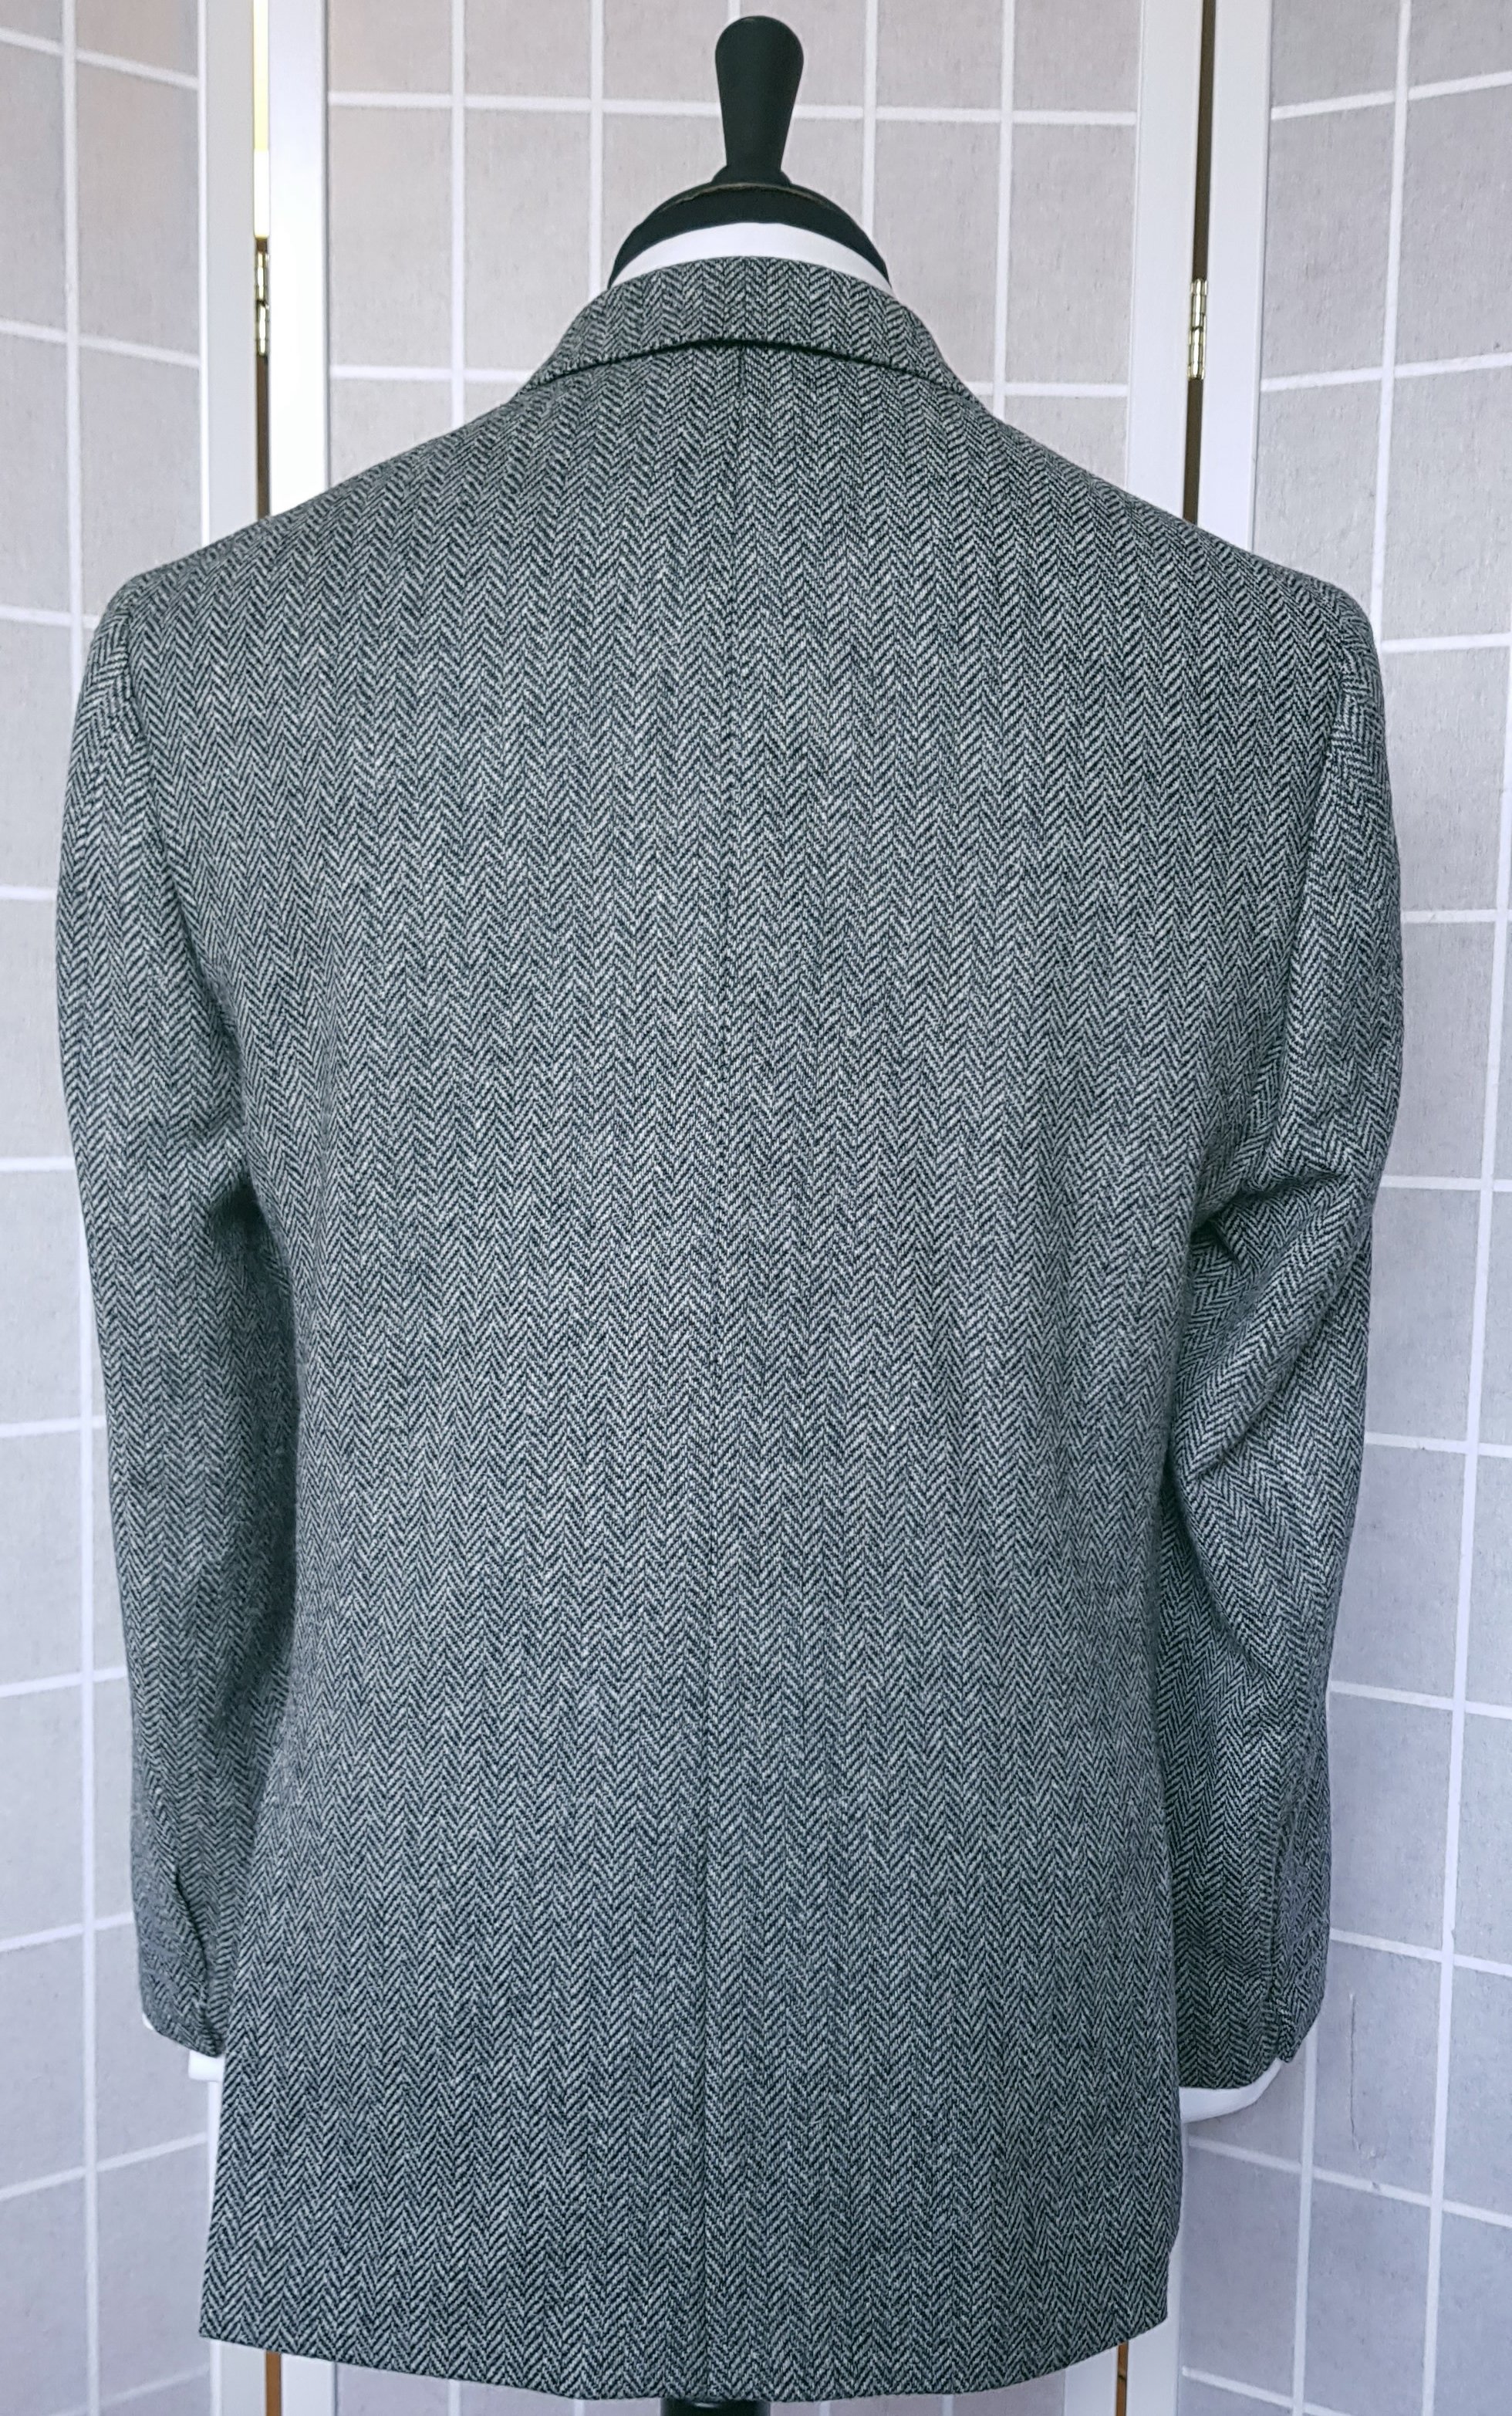 Bespoke Jacket in Holland & Sherry Herringbone Tweed — TWEED ADDICT